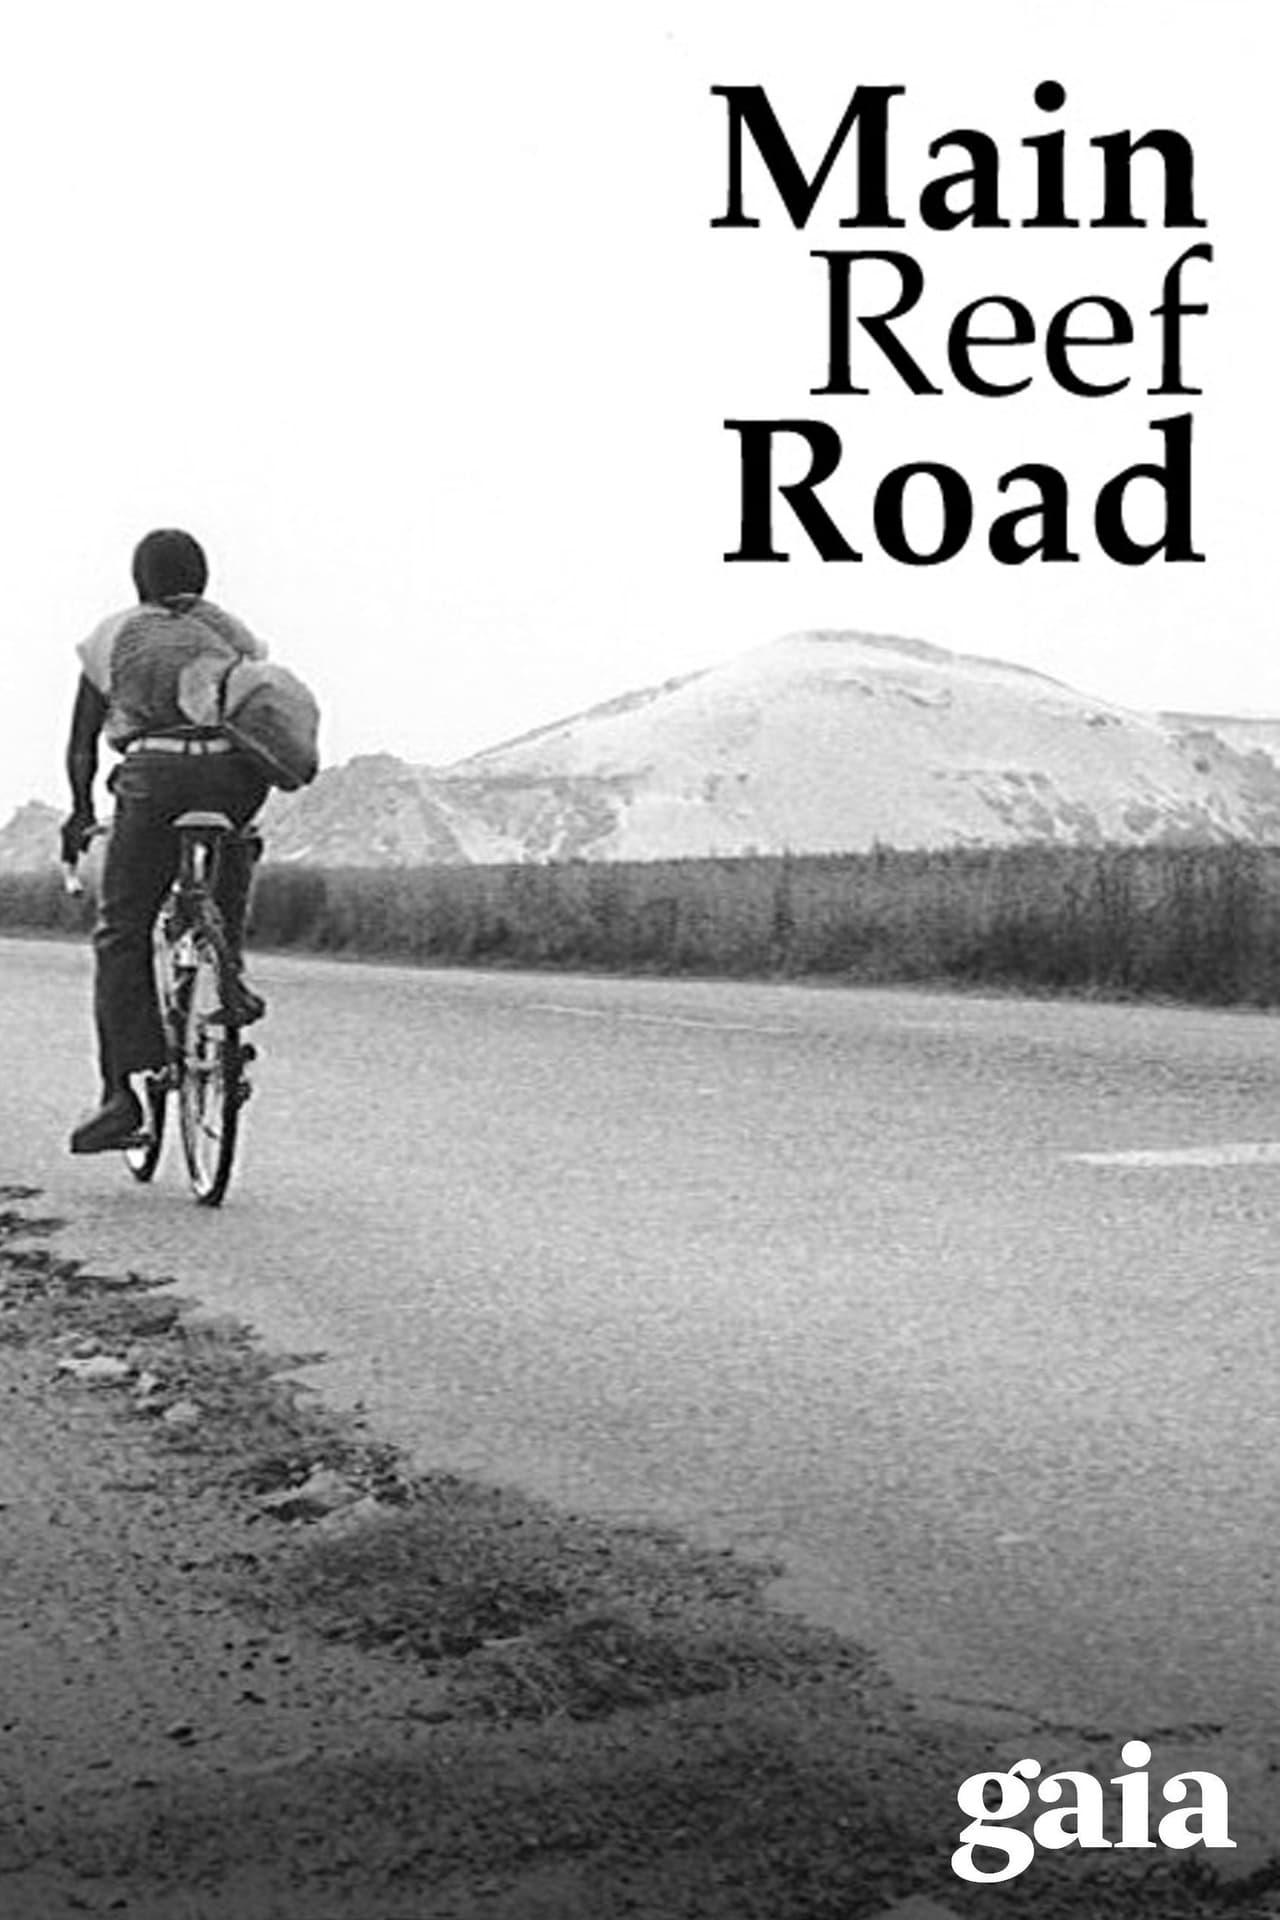 Main Reef Road poster